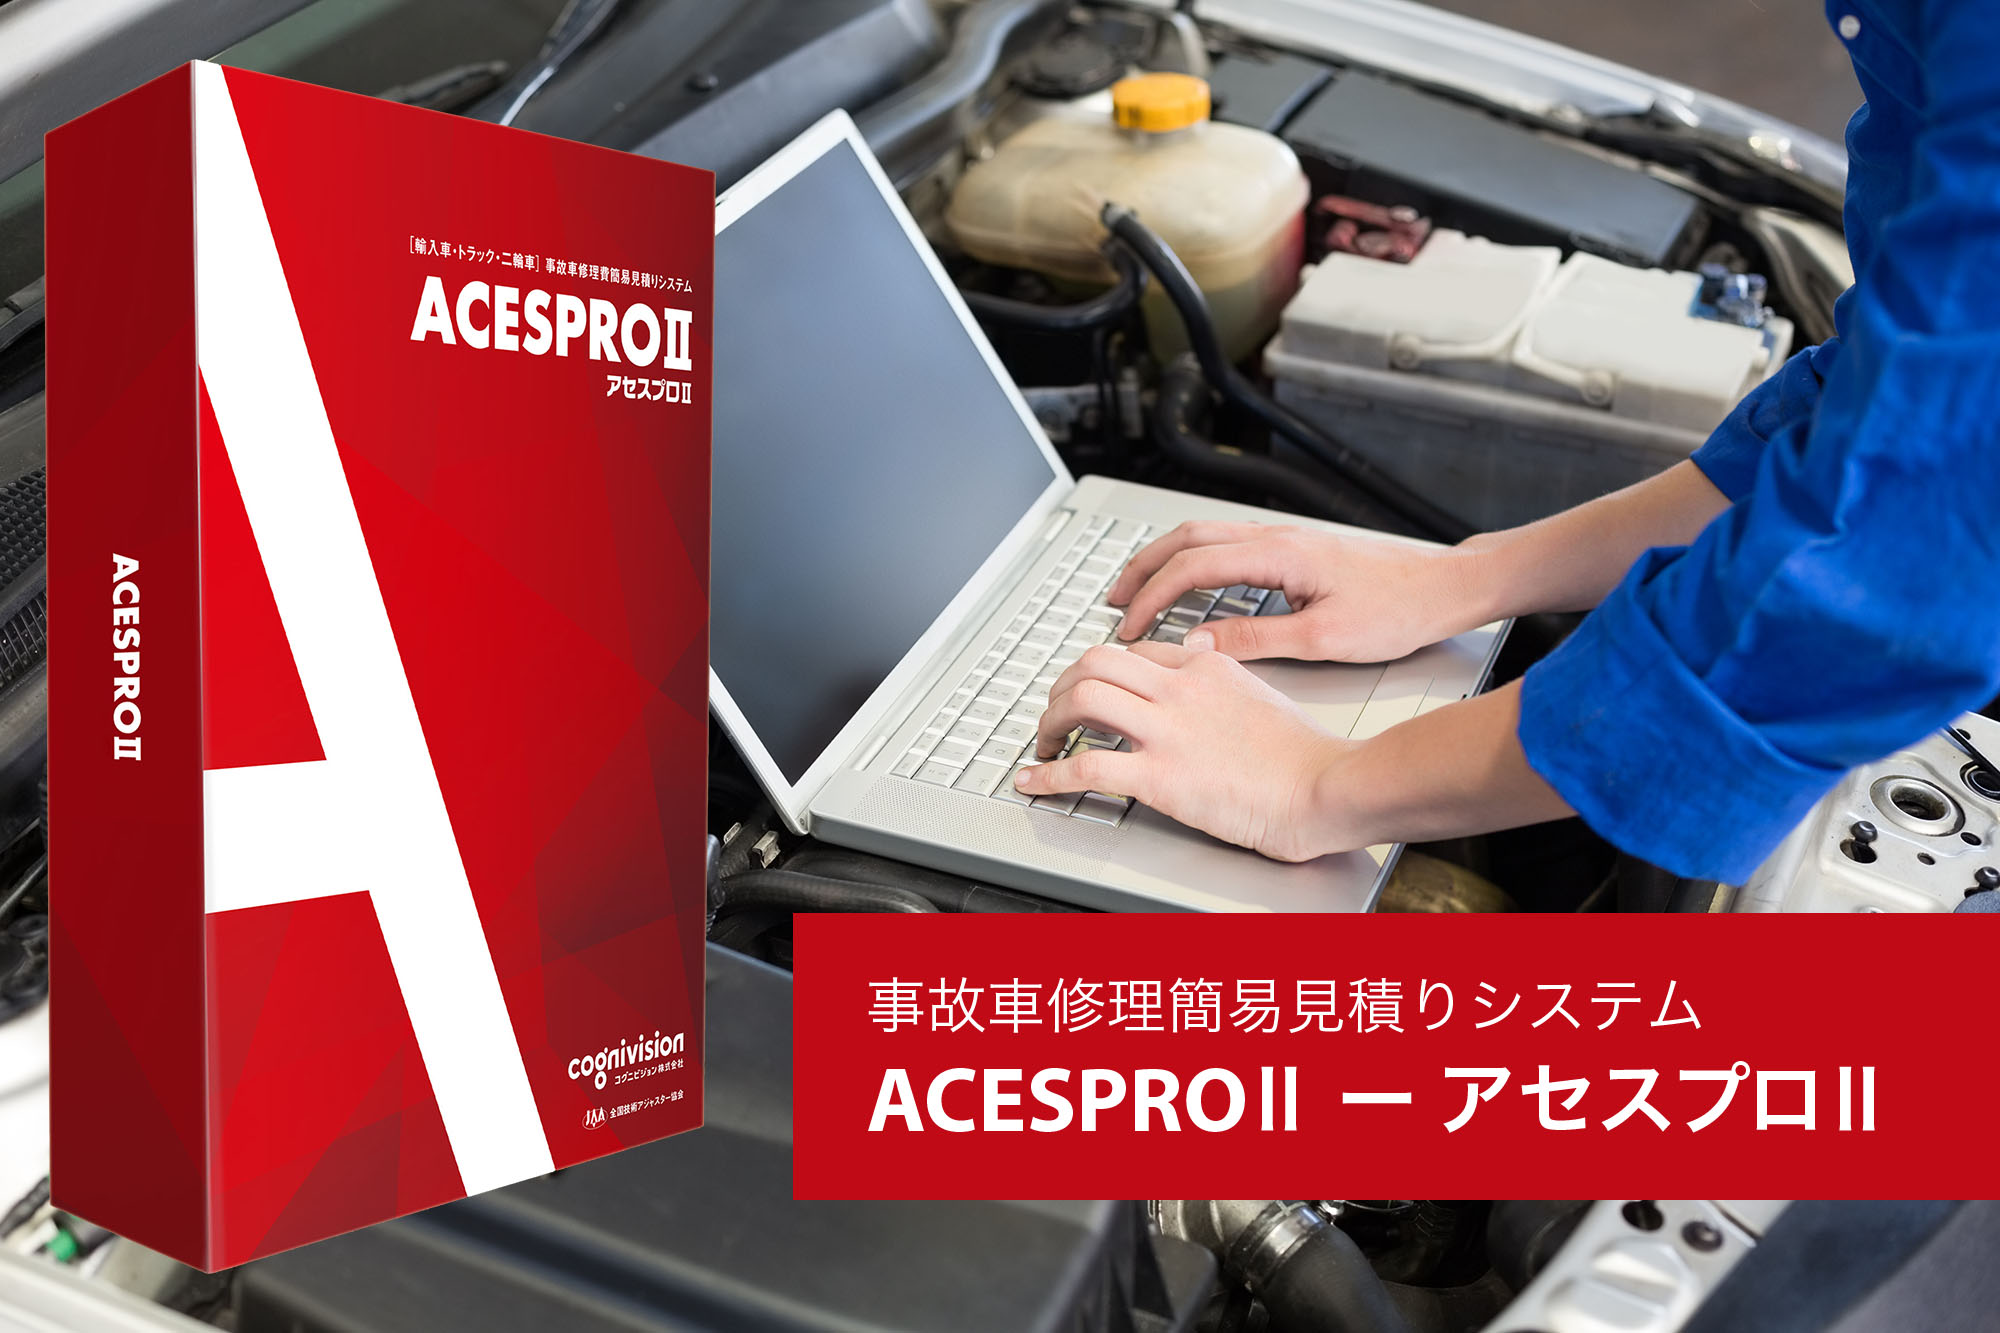 事故車修理費簡易見積りシステム「ACESPROⅡ ー アセスプロⅡ」